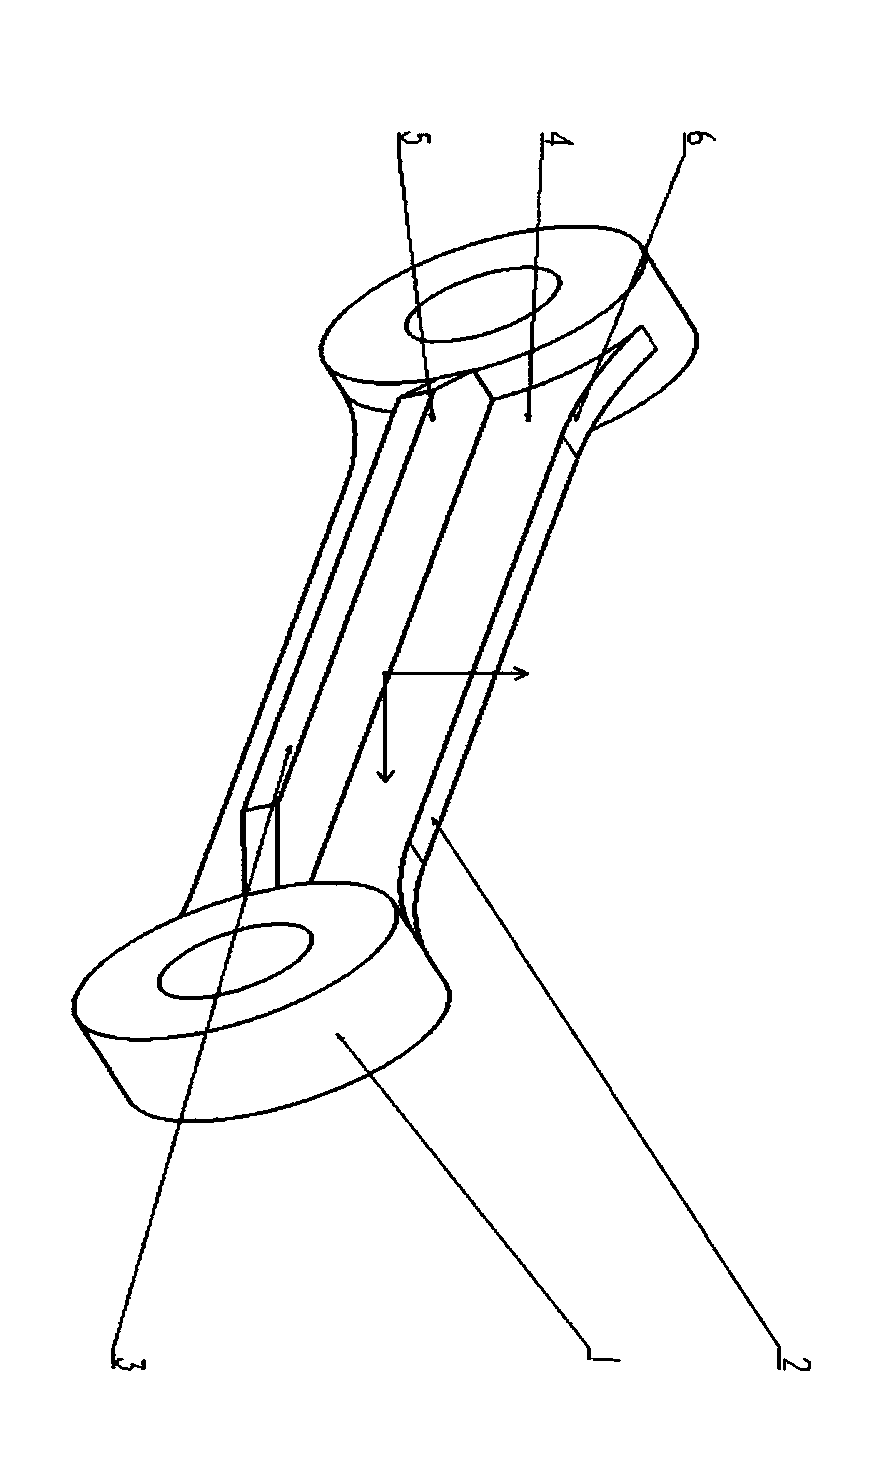 A lightweight design method of a landing gear brake component